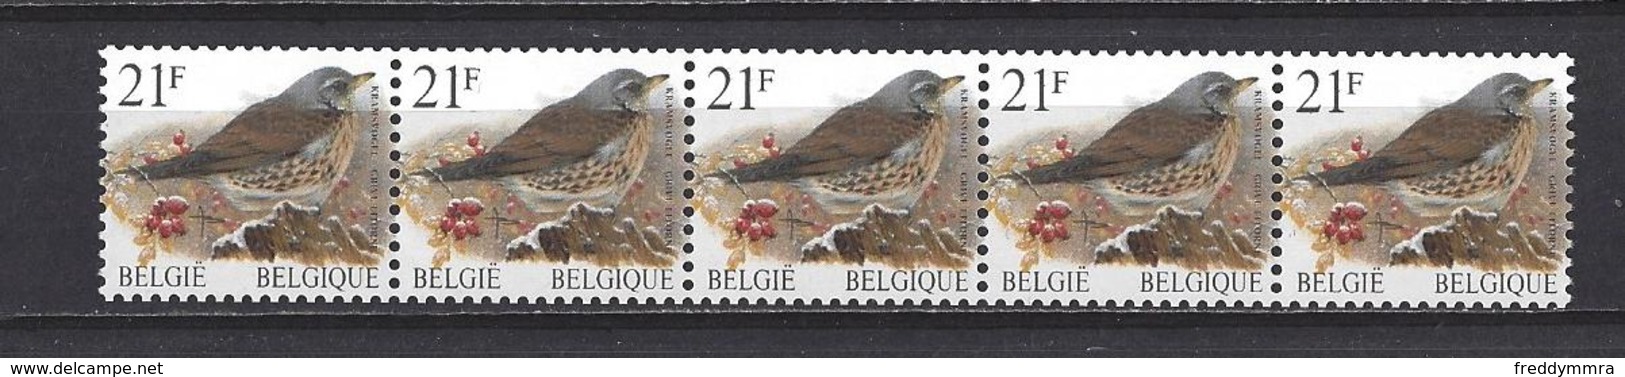 Belgique: R89 ** Avec N° -00100 - 5 Chiffres - Coil Stamps